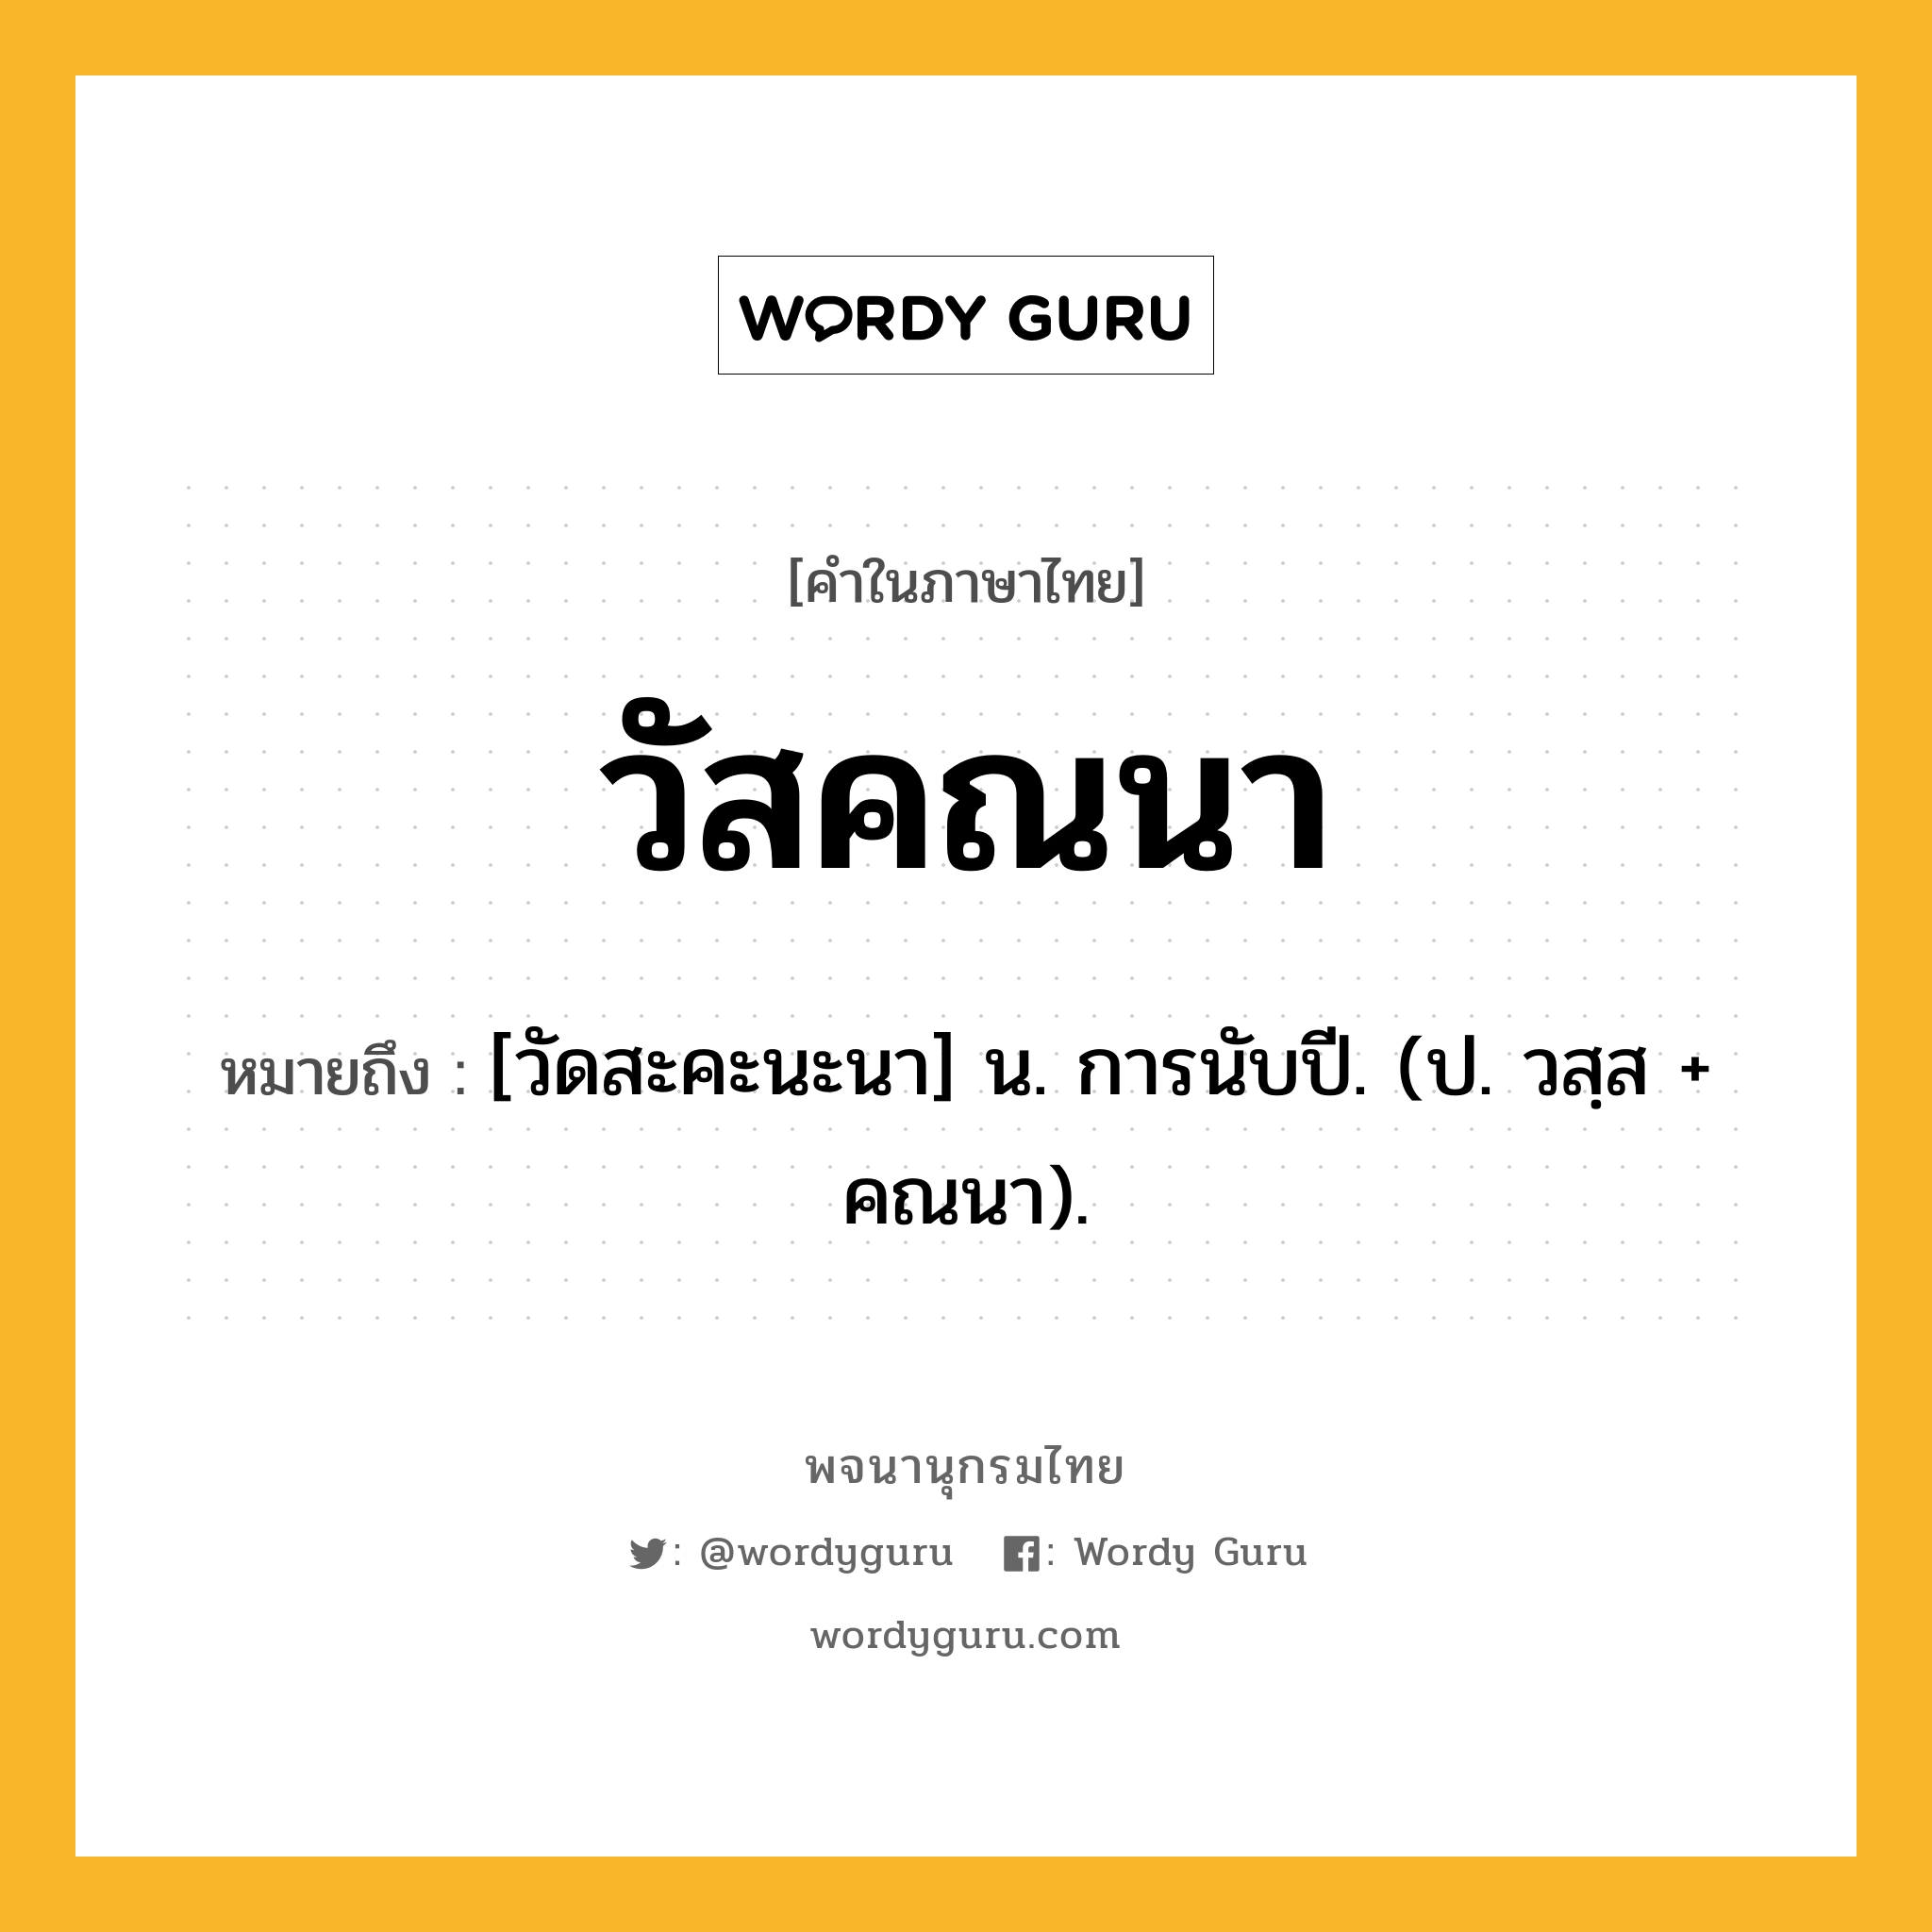 วัสคณนา ความหมาย หมายถึงอะไร?, คำในภาษาไทย วัสคณนา หมายถึง [วัดสะคะนะนา] น. การนับปี. (ป. วสฺส + คณนา).